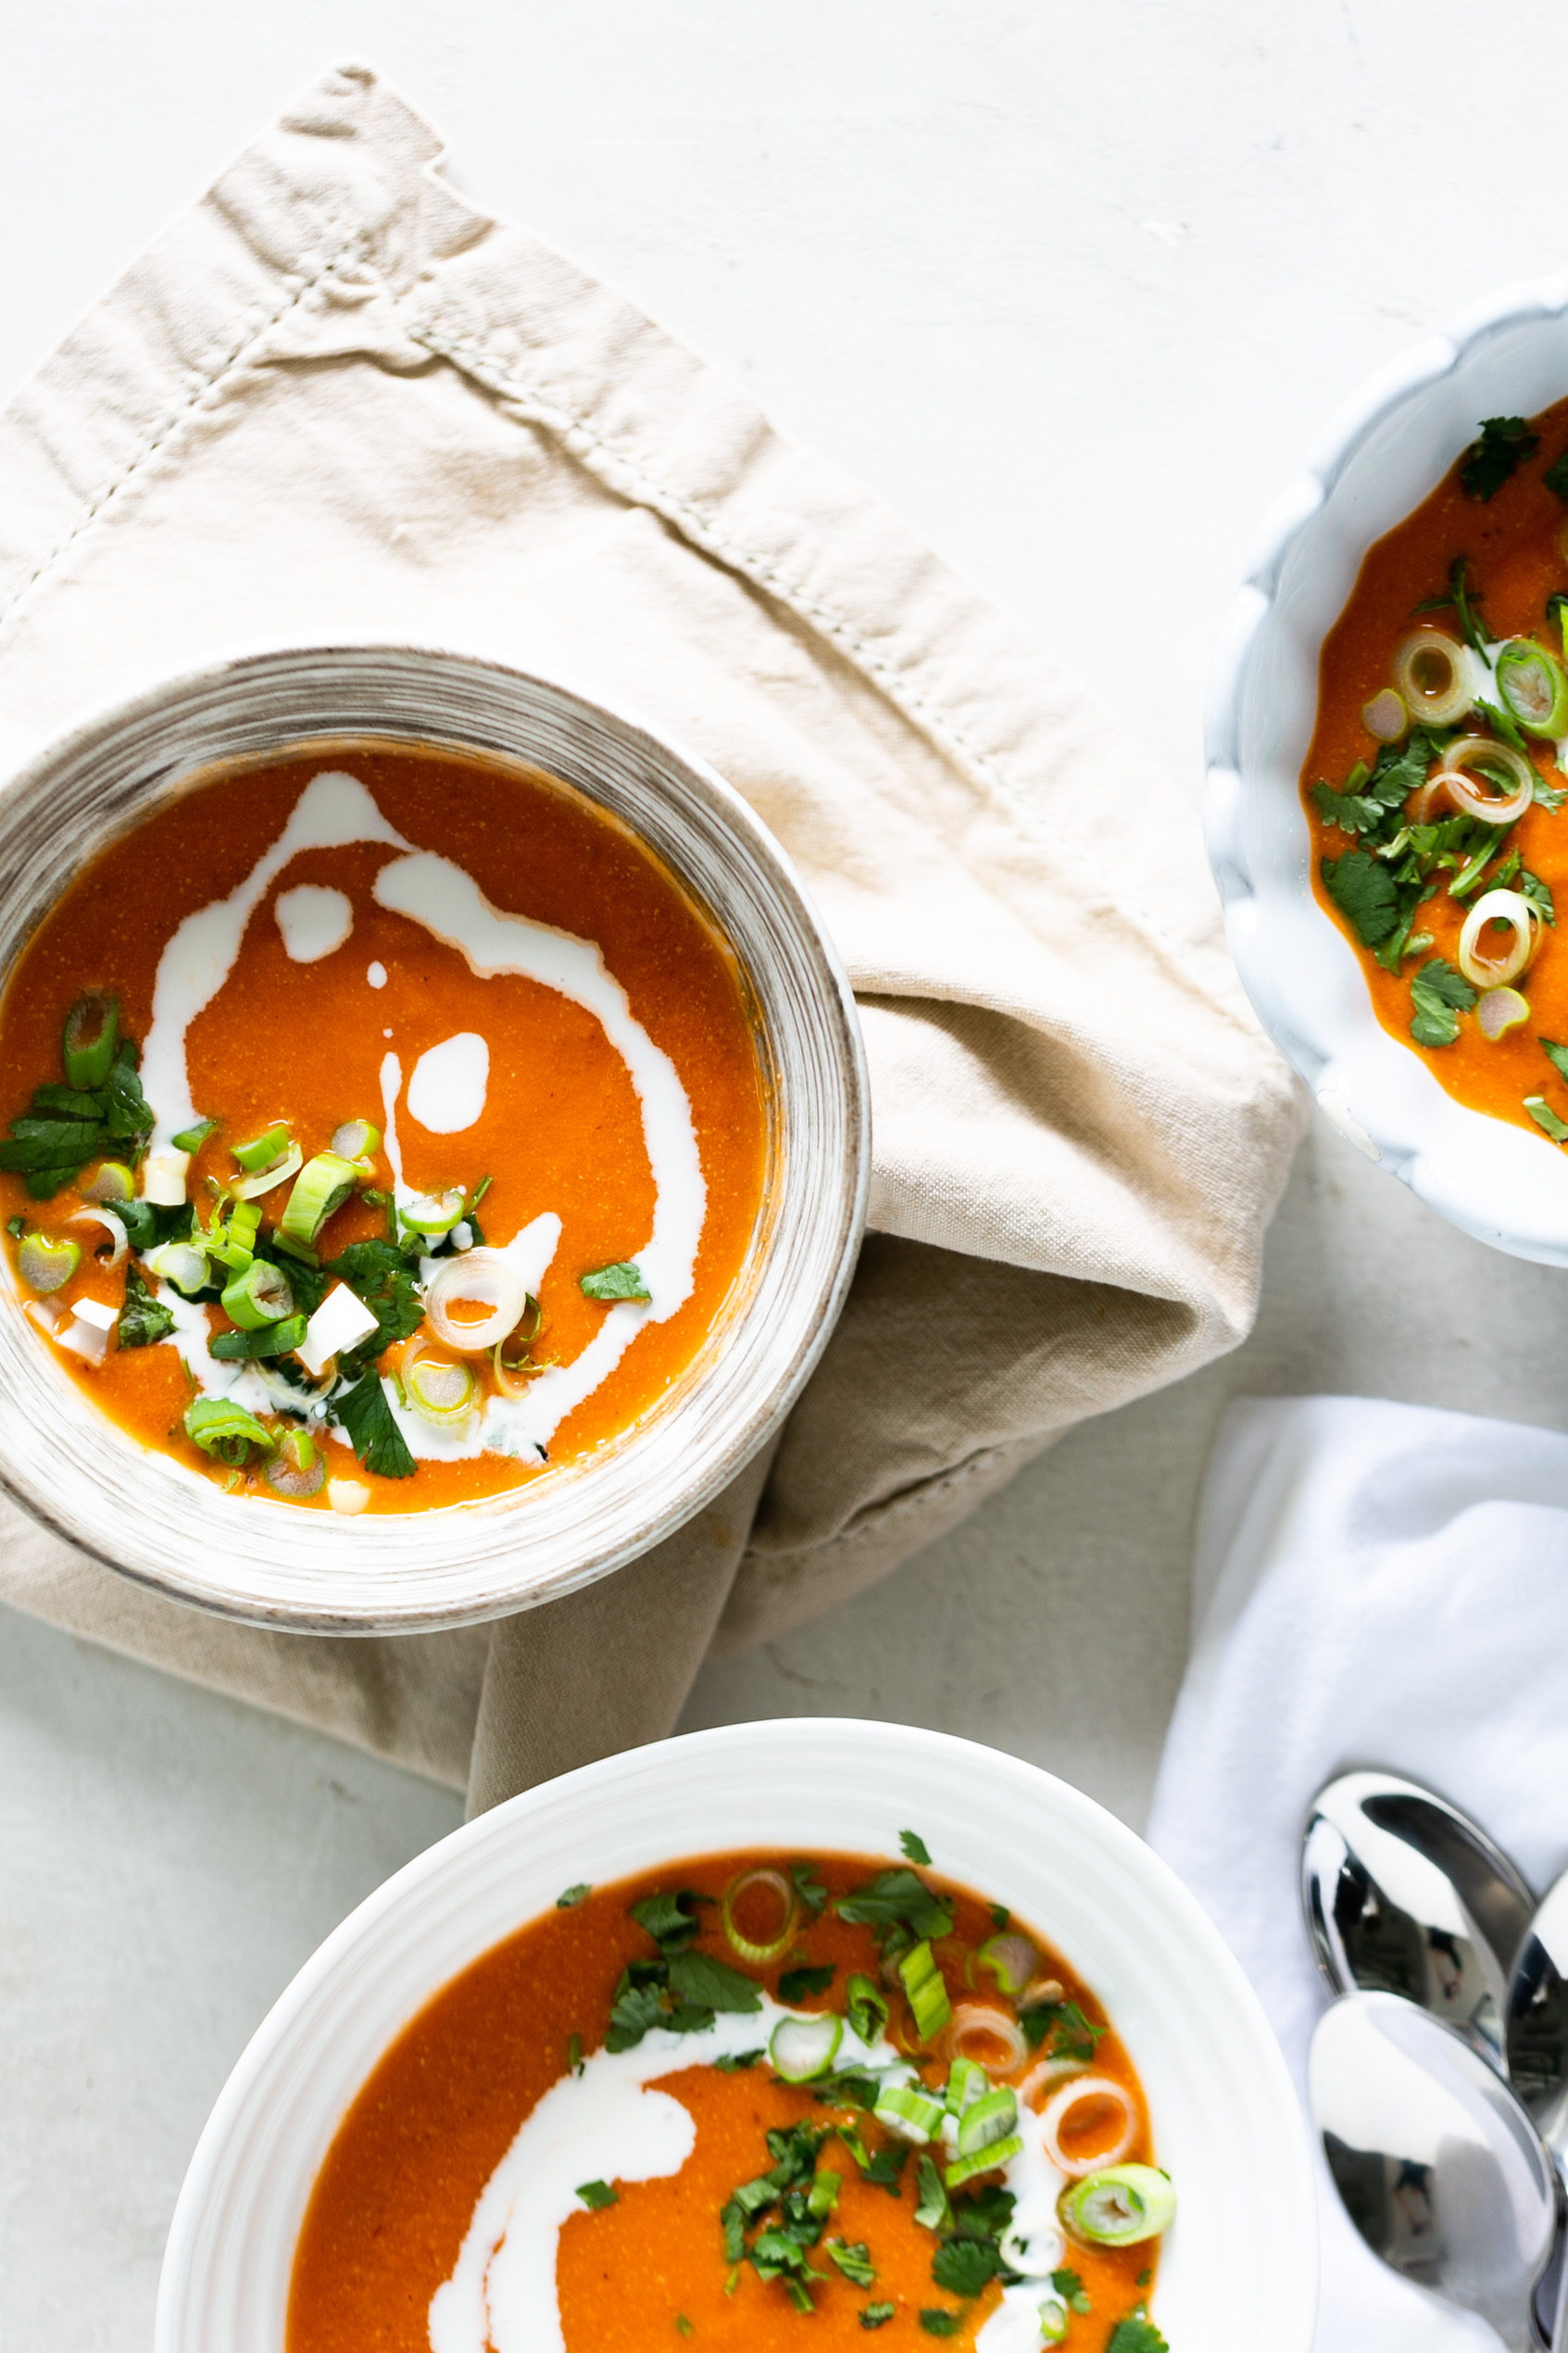 creamy tomato soup